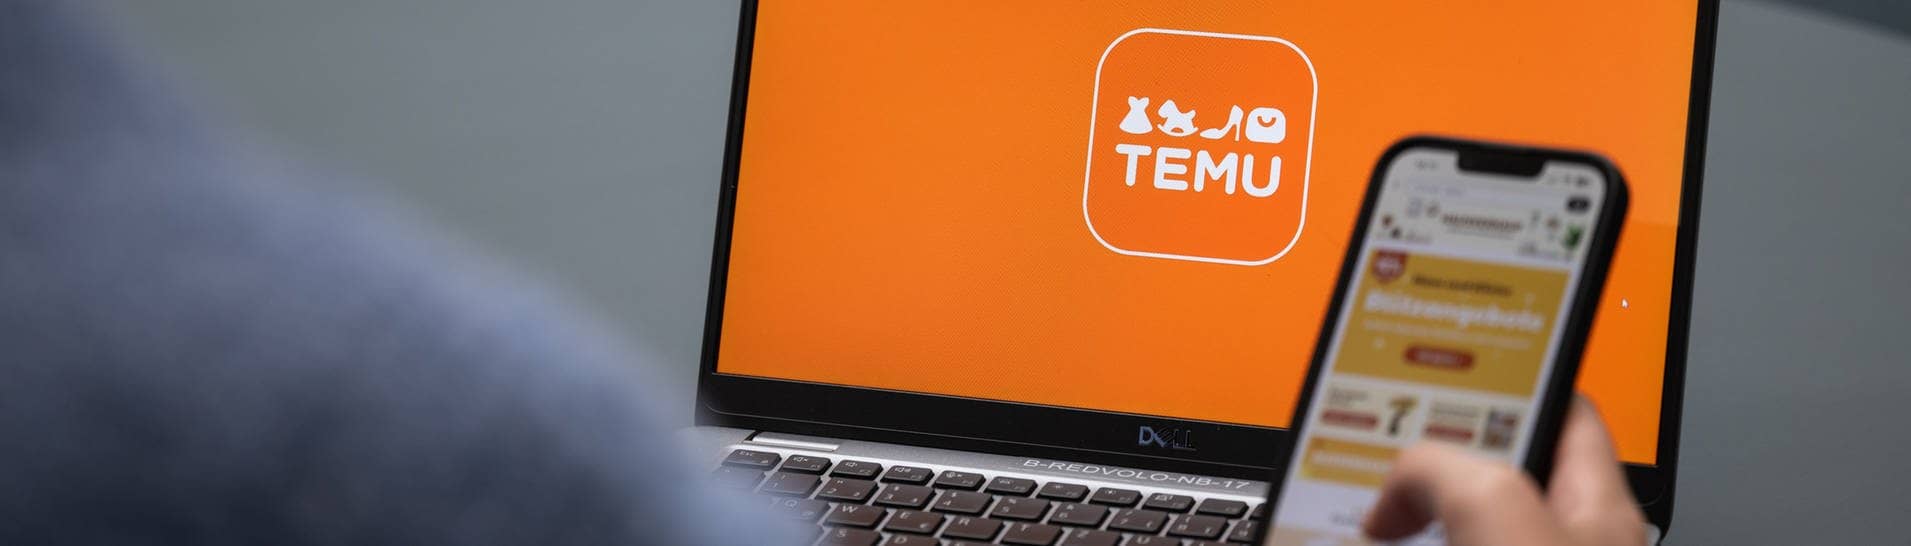 Temu App aus China: Erfahrungsberichte. Person hält Handy mit Temu App vor dem Laptop, auf dem der Onlineshop offen ist